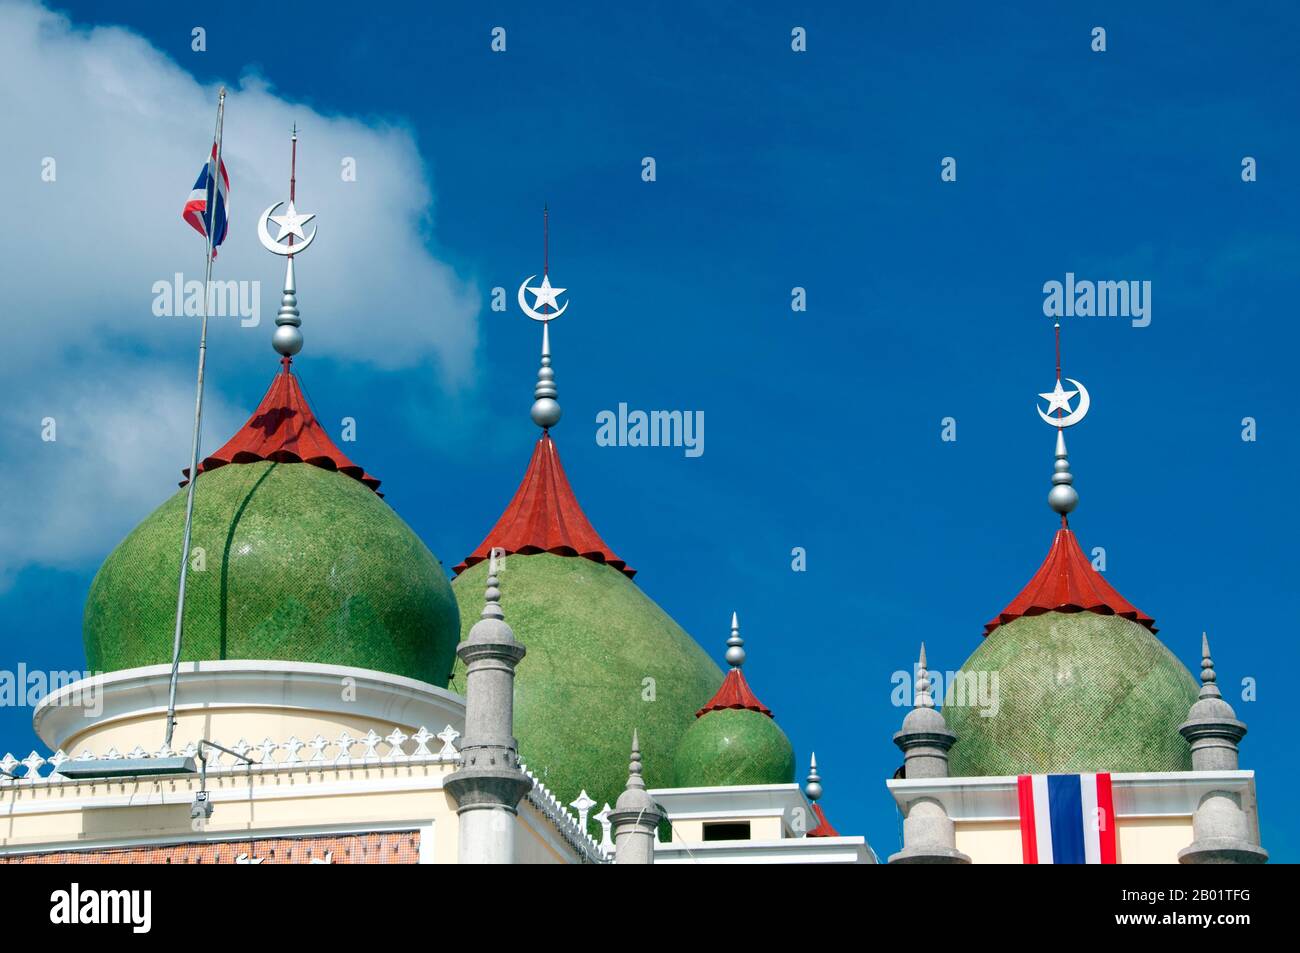 Thailandia: Matsayit Klang o Moschea centrale, Pattani, Thailandia meridionale. La Matsayit Klang è stata costruita negli anni '1960 ed è la seconda moschea più grande della Thailandia. Pattani, fondata nel XV secolo, era una volta la capitale di un sultanato indipendente di lingua malese. Oggi è il cuore spirituale e la città più importante della regione musulmana malese del profondo Sud della Thailandia. Circa il 75% della popolazione è musulmano di lingua malese (le cifre sono contestate), e la città e la regione sono al centro dell'attuale instabilità politica che ha disturbato le province di confine del profondo Sud. Foto Stock